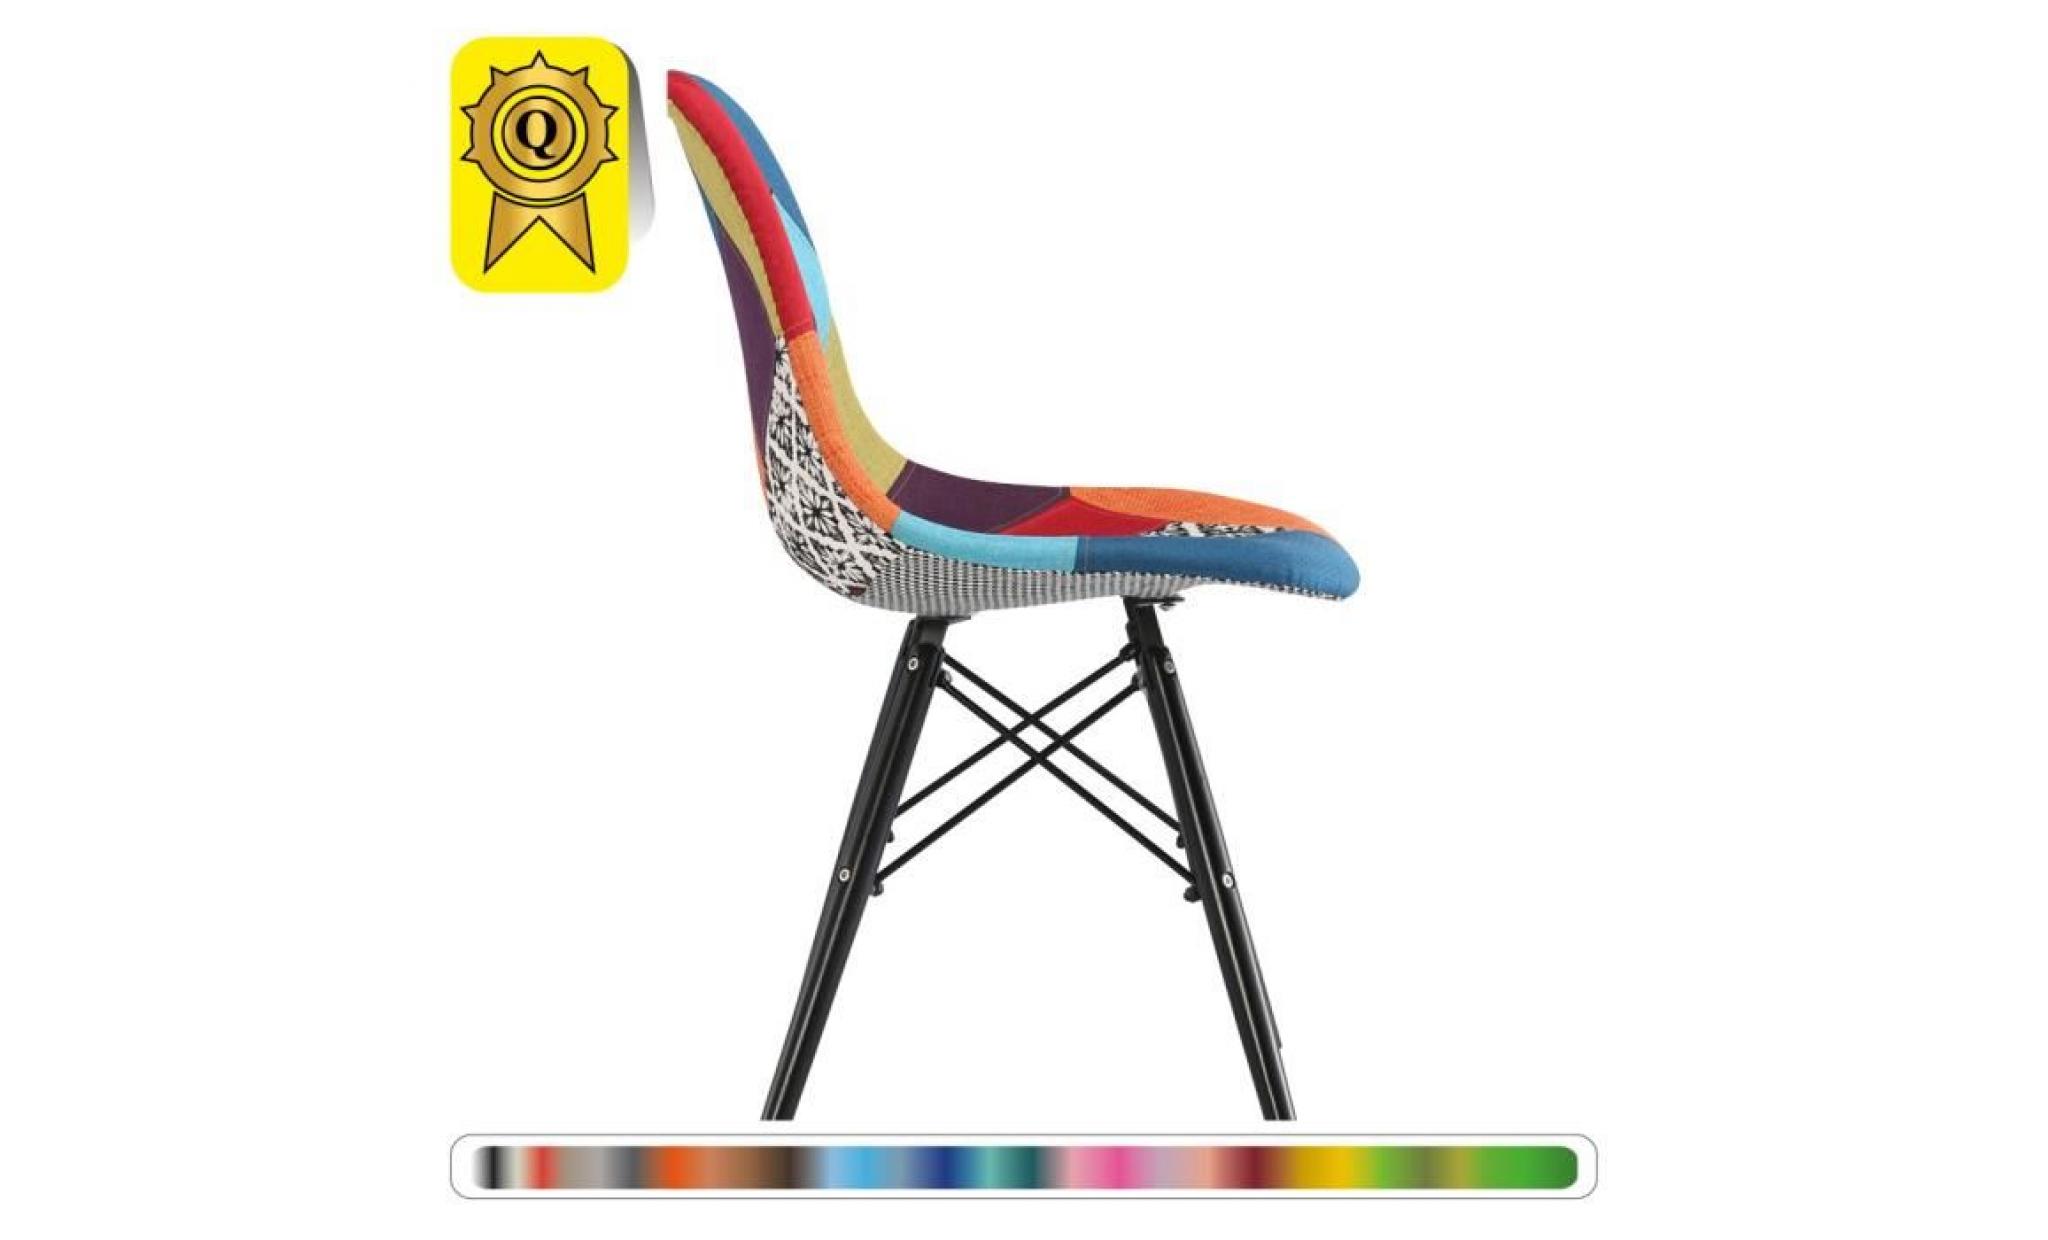 6 x chaise design scandinave haut: 48 patchwork couleur pieds  bois noir  decopresto dp dswb48 pc 6 pas cher